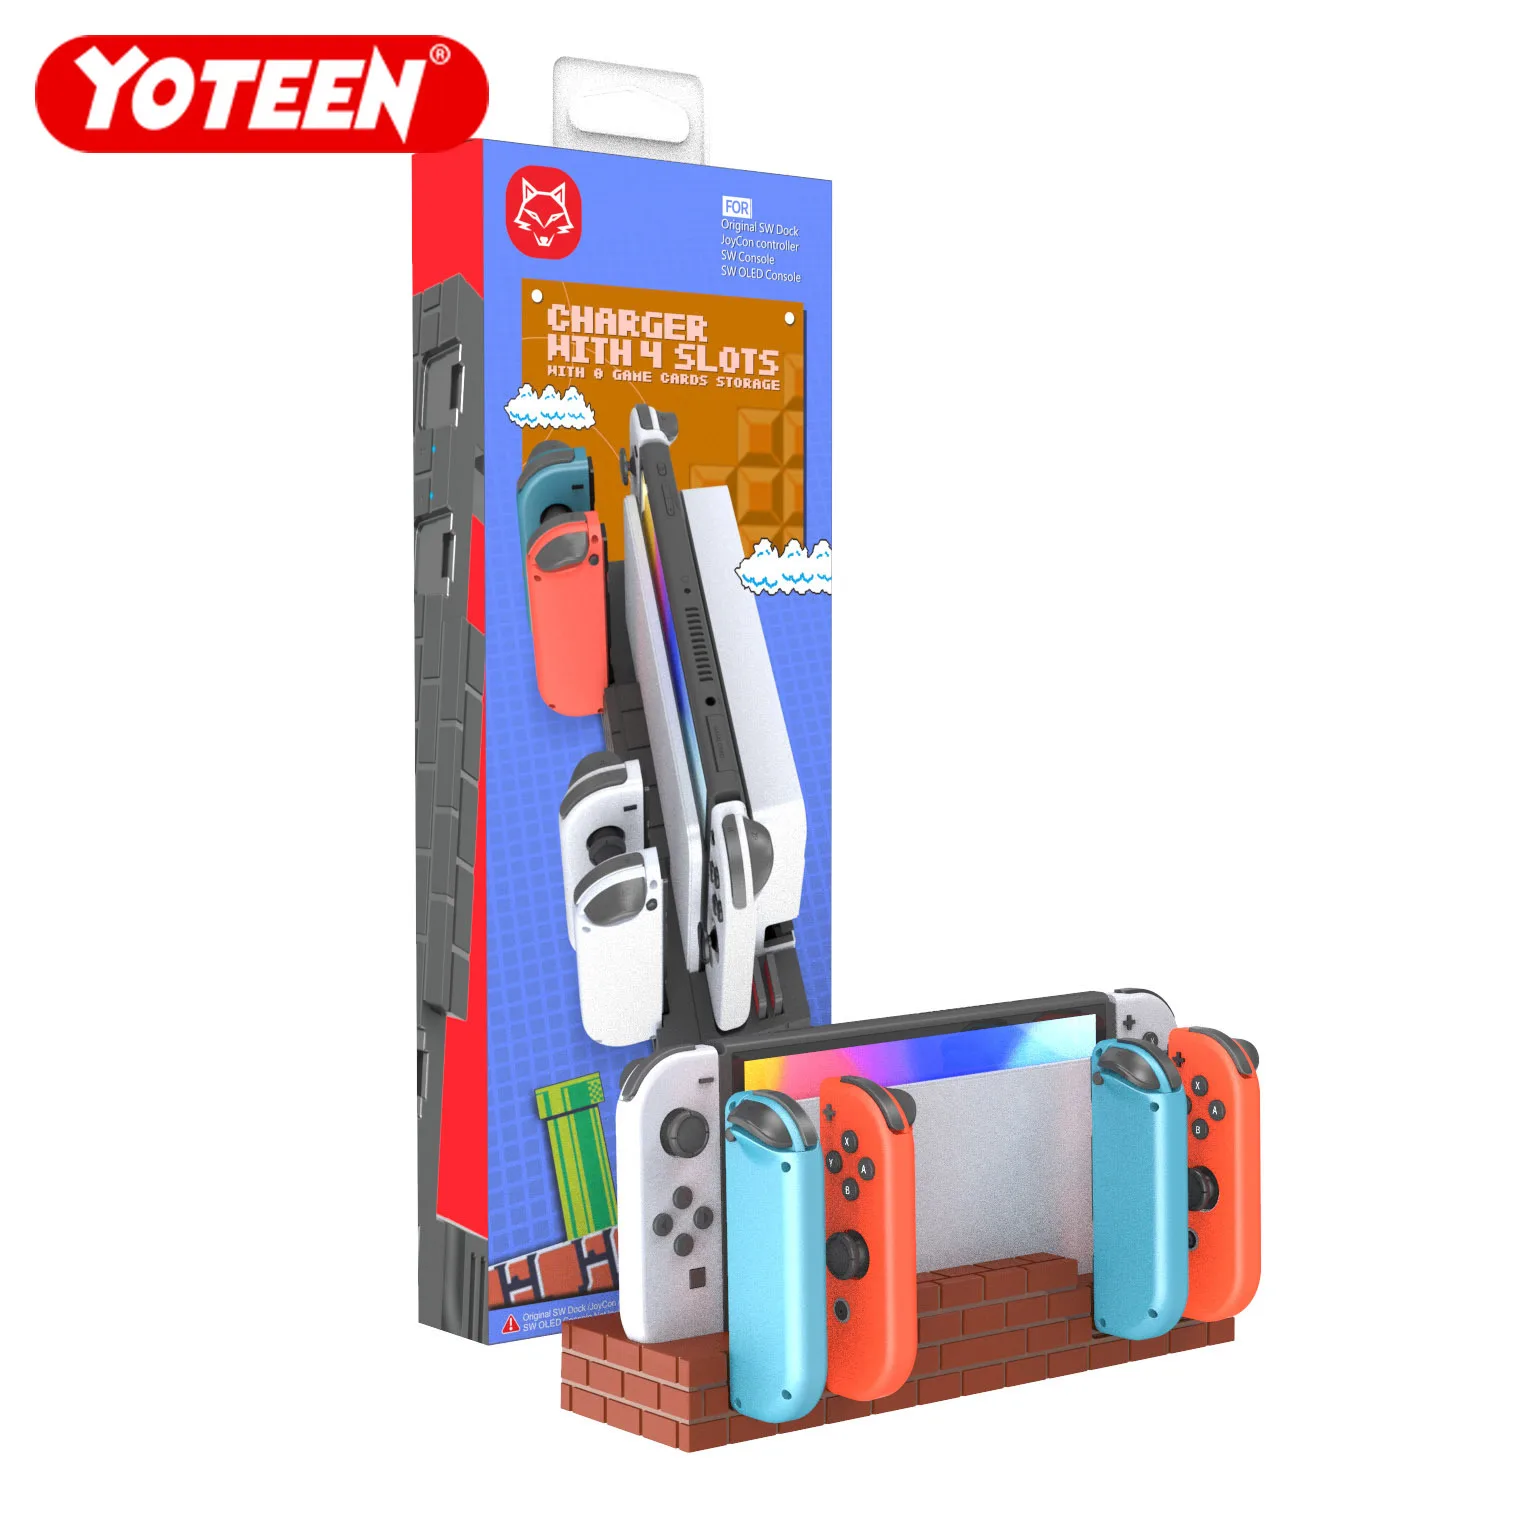 

Yoteen многофункциональная зарядная док-станция для 4 Joy-Con зарядное устройство для Nintendo Switch/Switch OLED док-станция с 8 слотами для карт